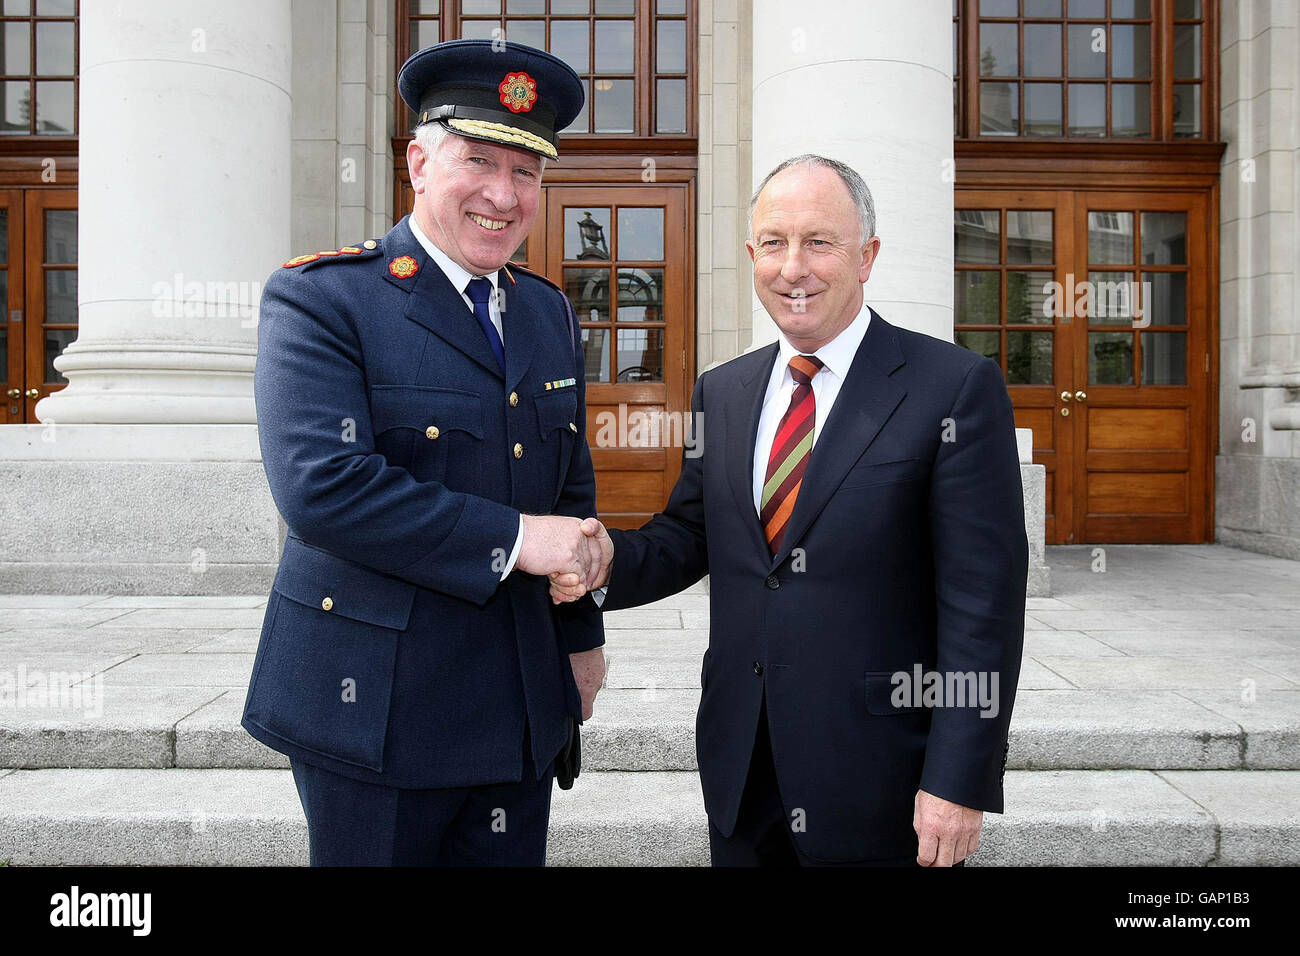 Il nuovo Ministro della Giustizia Dermot Ahern TD incontra il Commissario del Garda Fachtna Murphy presso gli edifici governativi di Dublino. Foto Stock